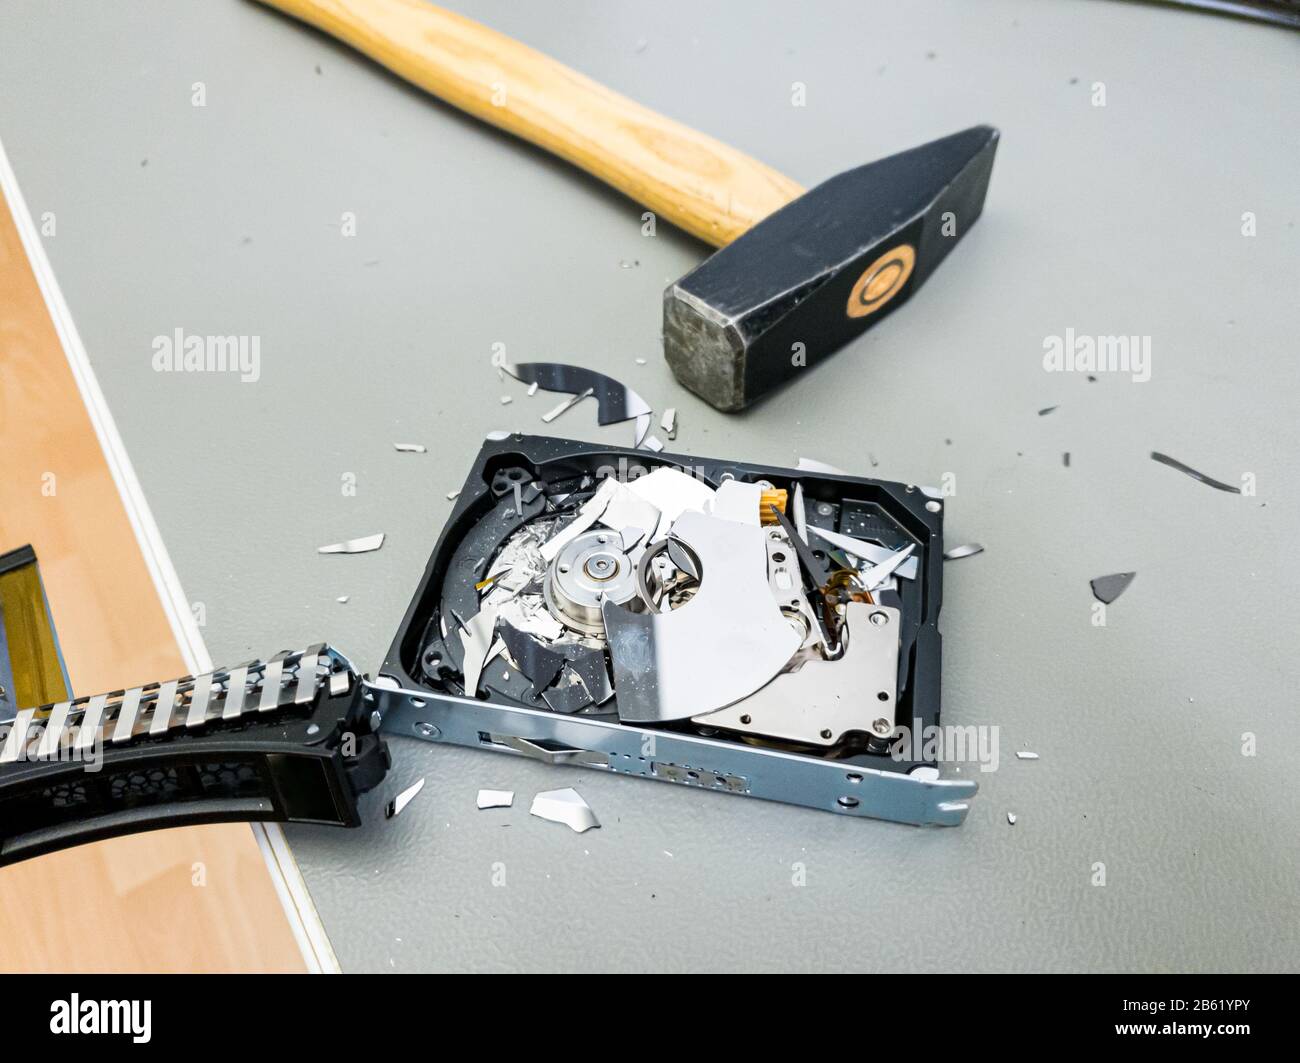 Festplatte des Computers mit einem Hammer zerstören Stockfotografie - Alamy